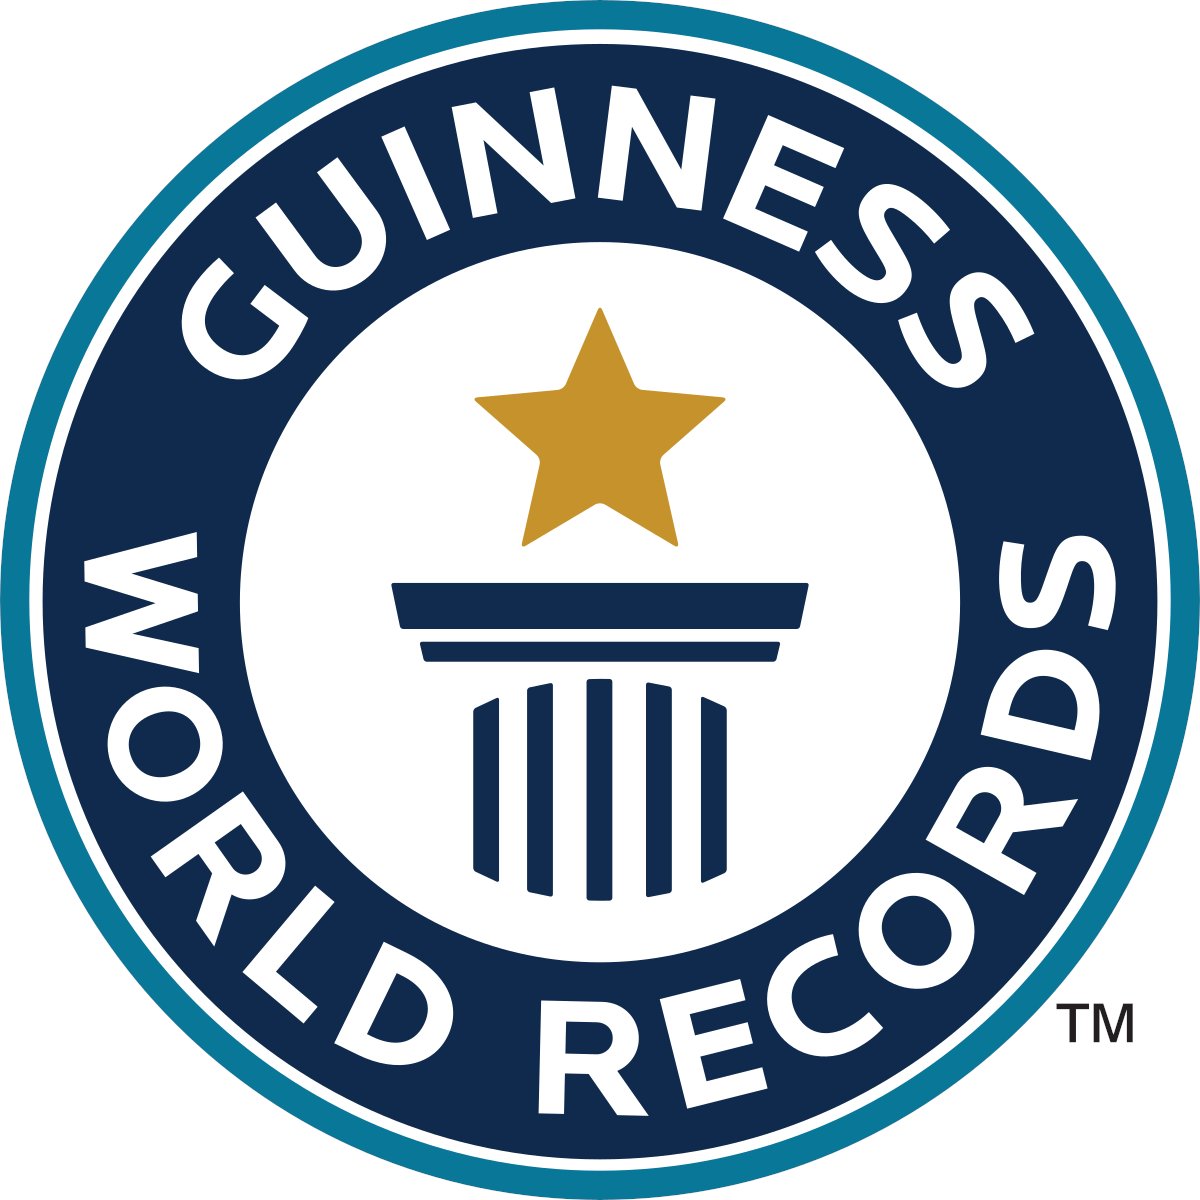 استفاده از ظرفیت #گینس علیه رژیم اشغالگر و حامیانش
#GuinnessWorldRecord